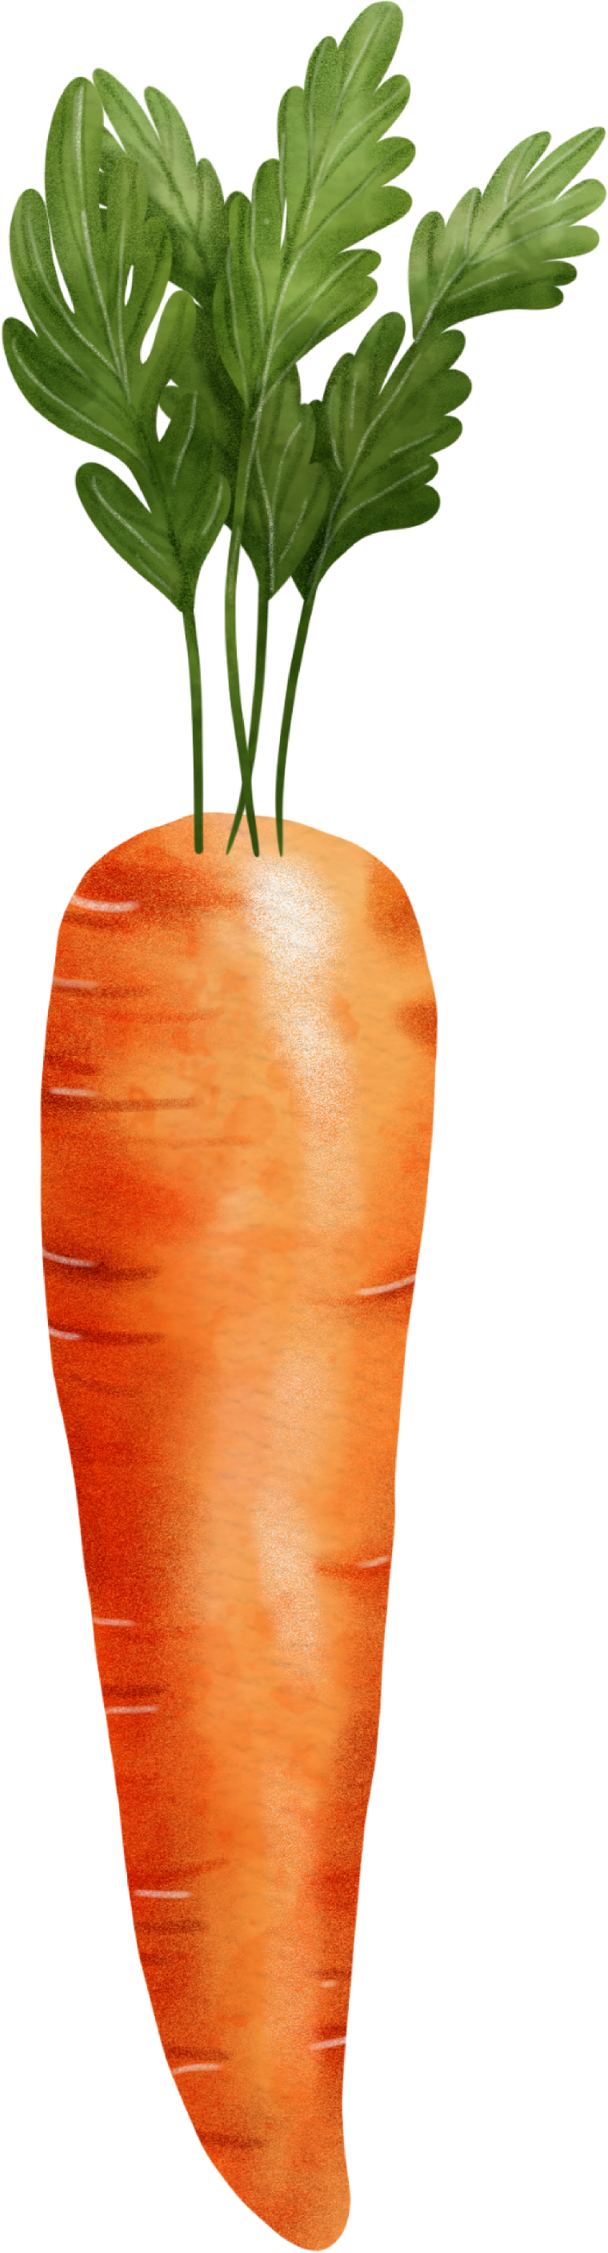 Carrot Watercolor Cutout